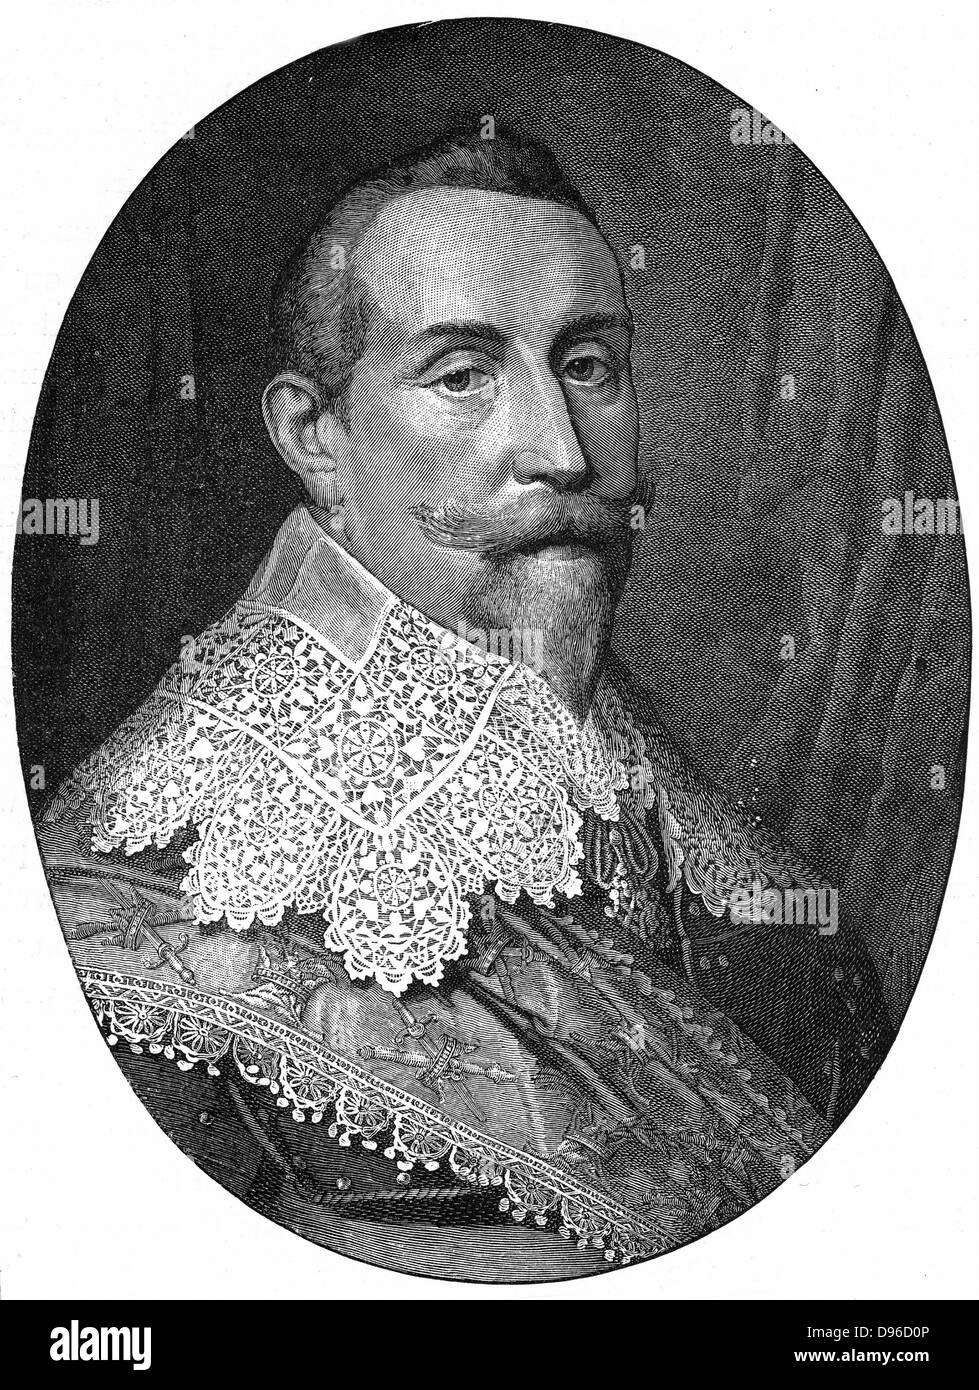 Gustav II Adolf Gustavus Adolphus (1594-1632) König von Schweden von 1611. Führer der Protestanten im 30-jährigen Krieg. Gravur nach Portrait von Miereveldt. Stockfoto